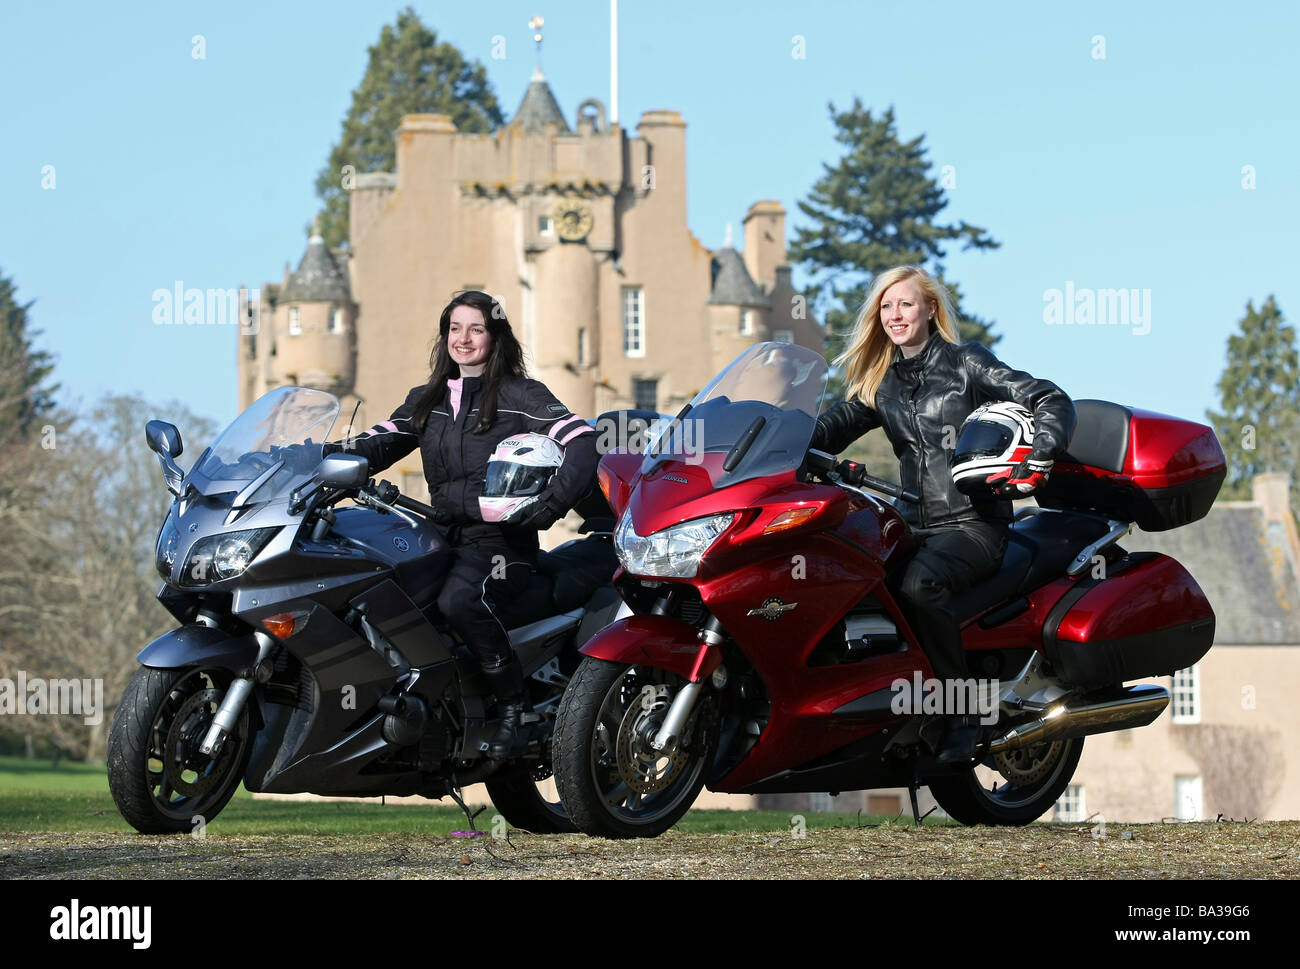 Deux femmes motocyclistes posant avec prêt de porter des vêtements protecteurs à l'emplacement de château écossais Banque D'Images